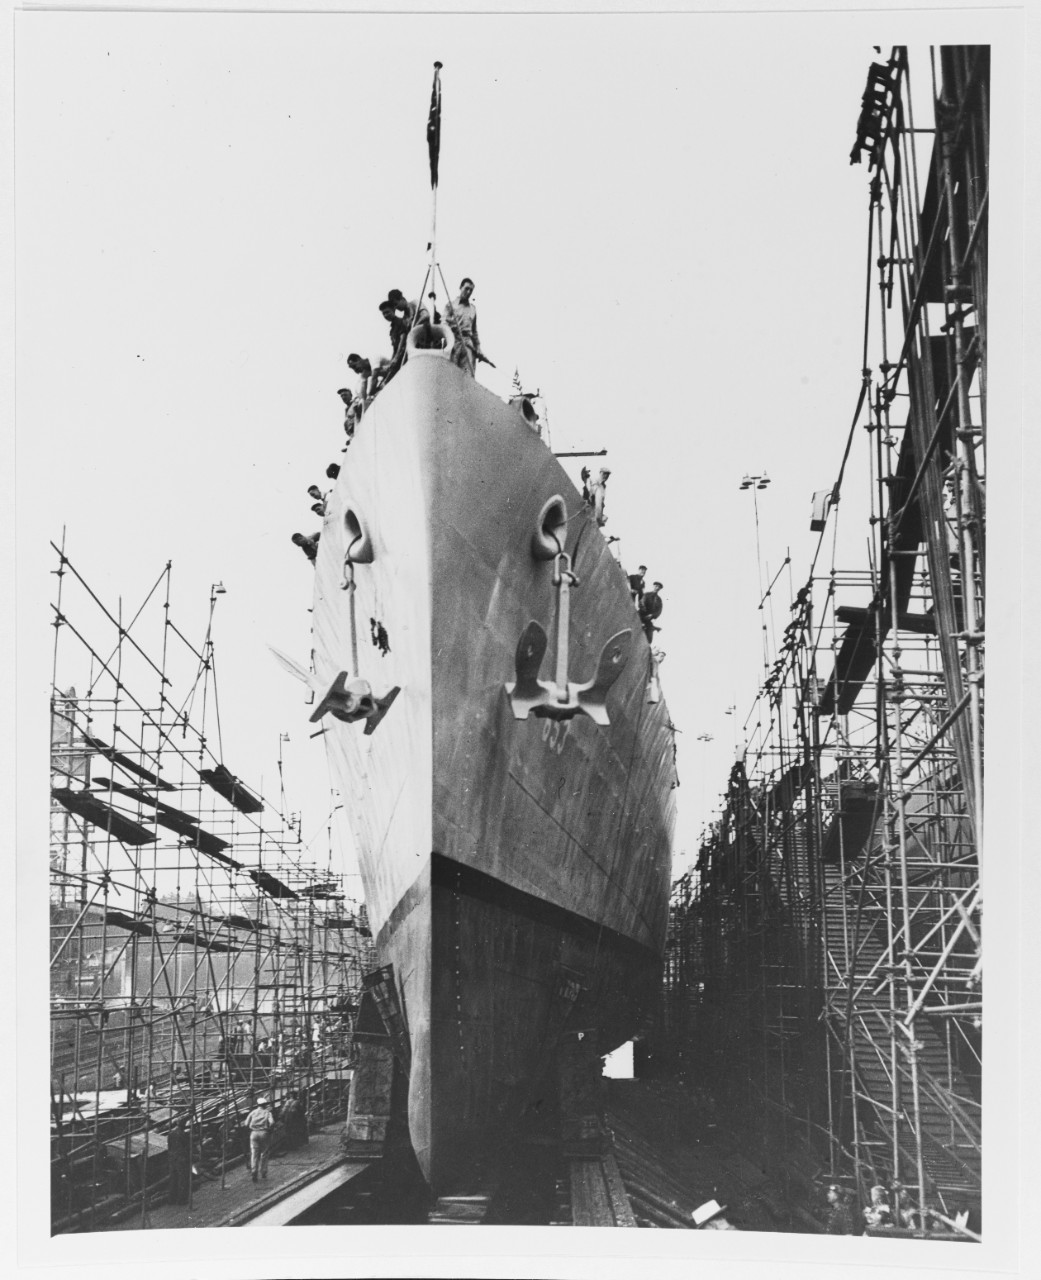 USS KNAPP (DD-653)